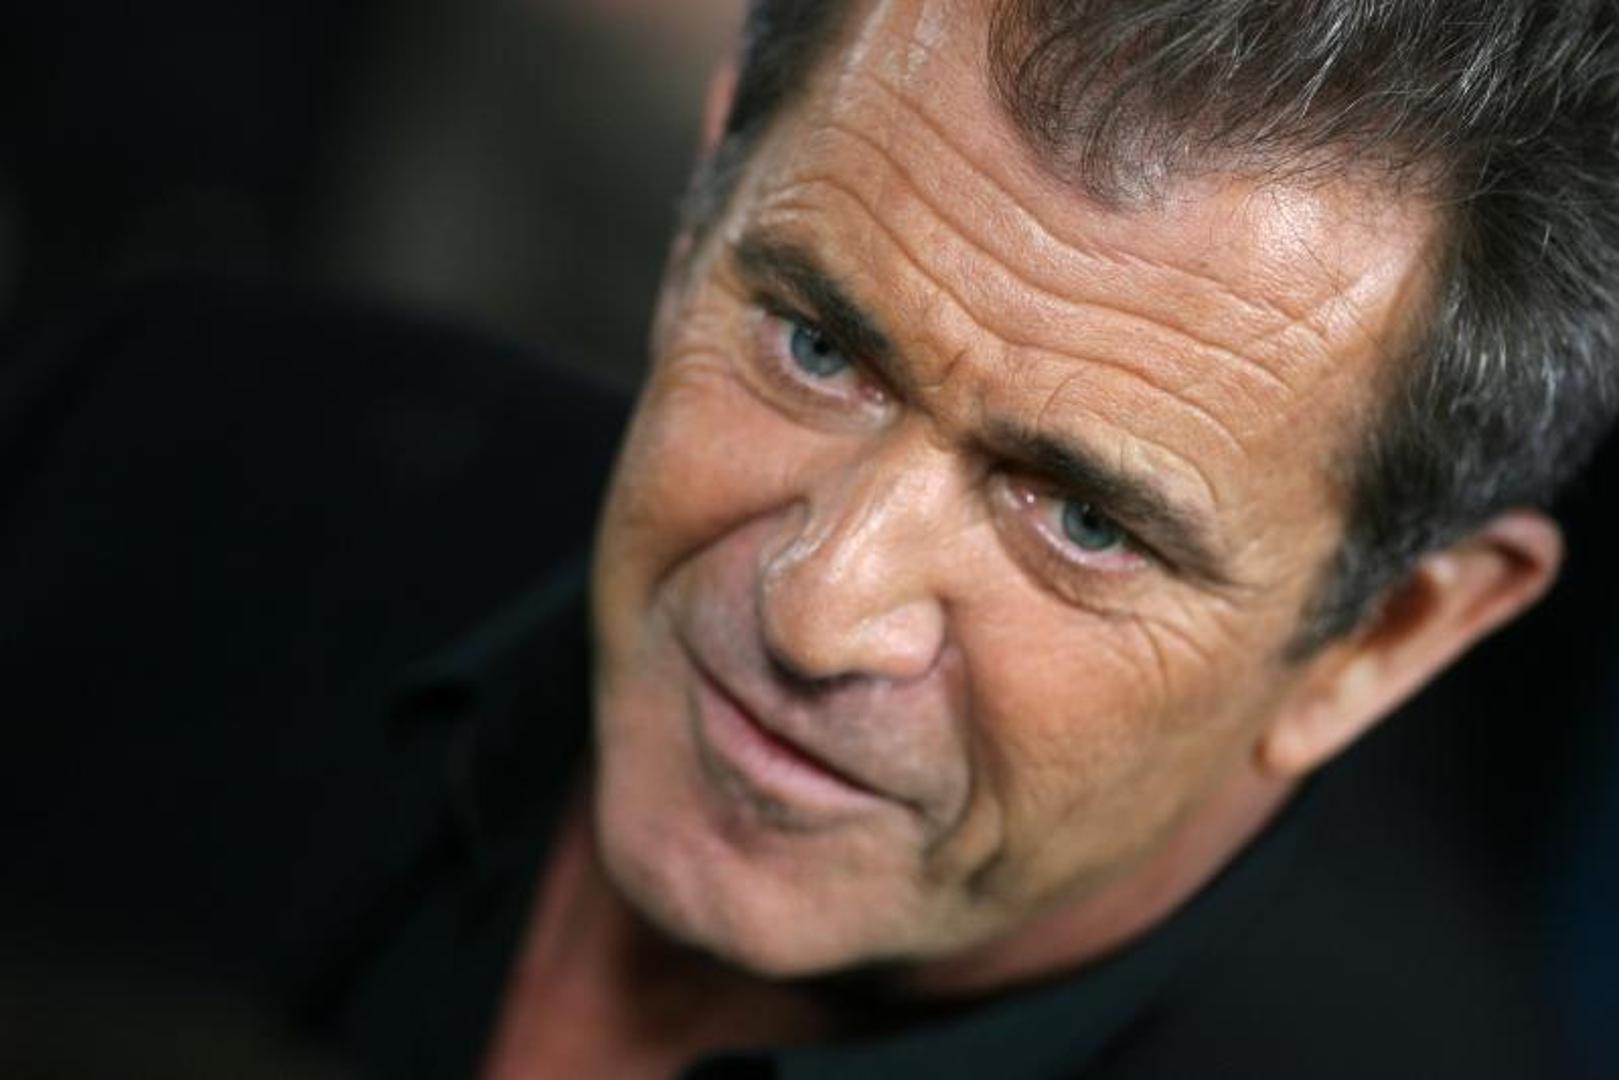 Nakon niza žena, titulu najljepše osobe 1996. godine uzeo je glumac Mel Gibson.